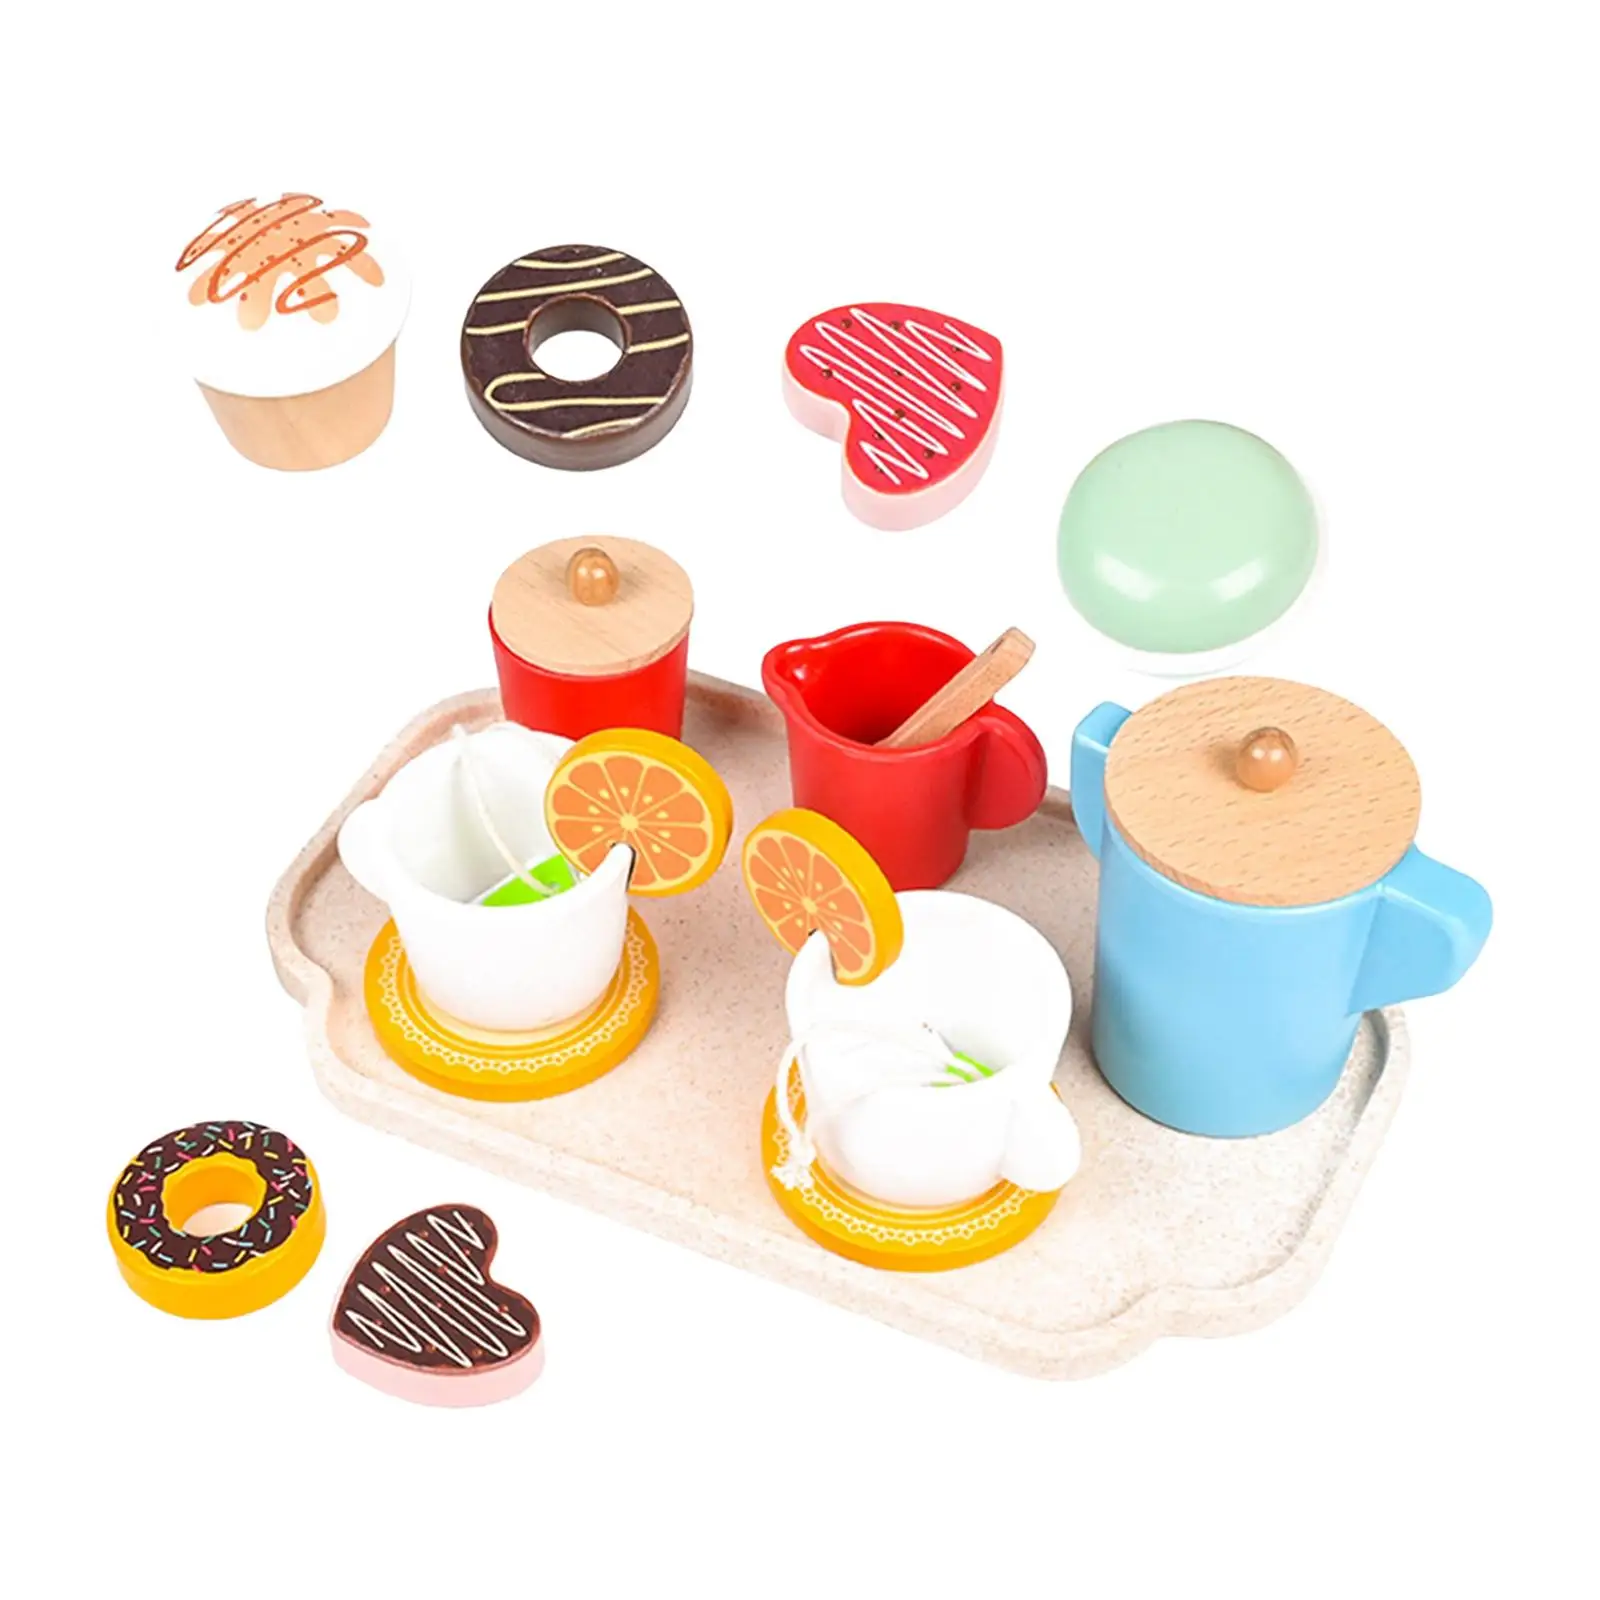 12шт Посуда для чаепития Развивающая игрушка Монтессори для детей дошкольного возраста Мальчиков Девочек малышей в возрасте 3 4 5 лет